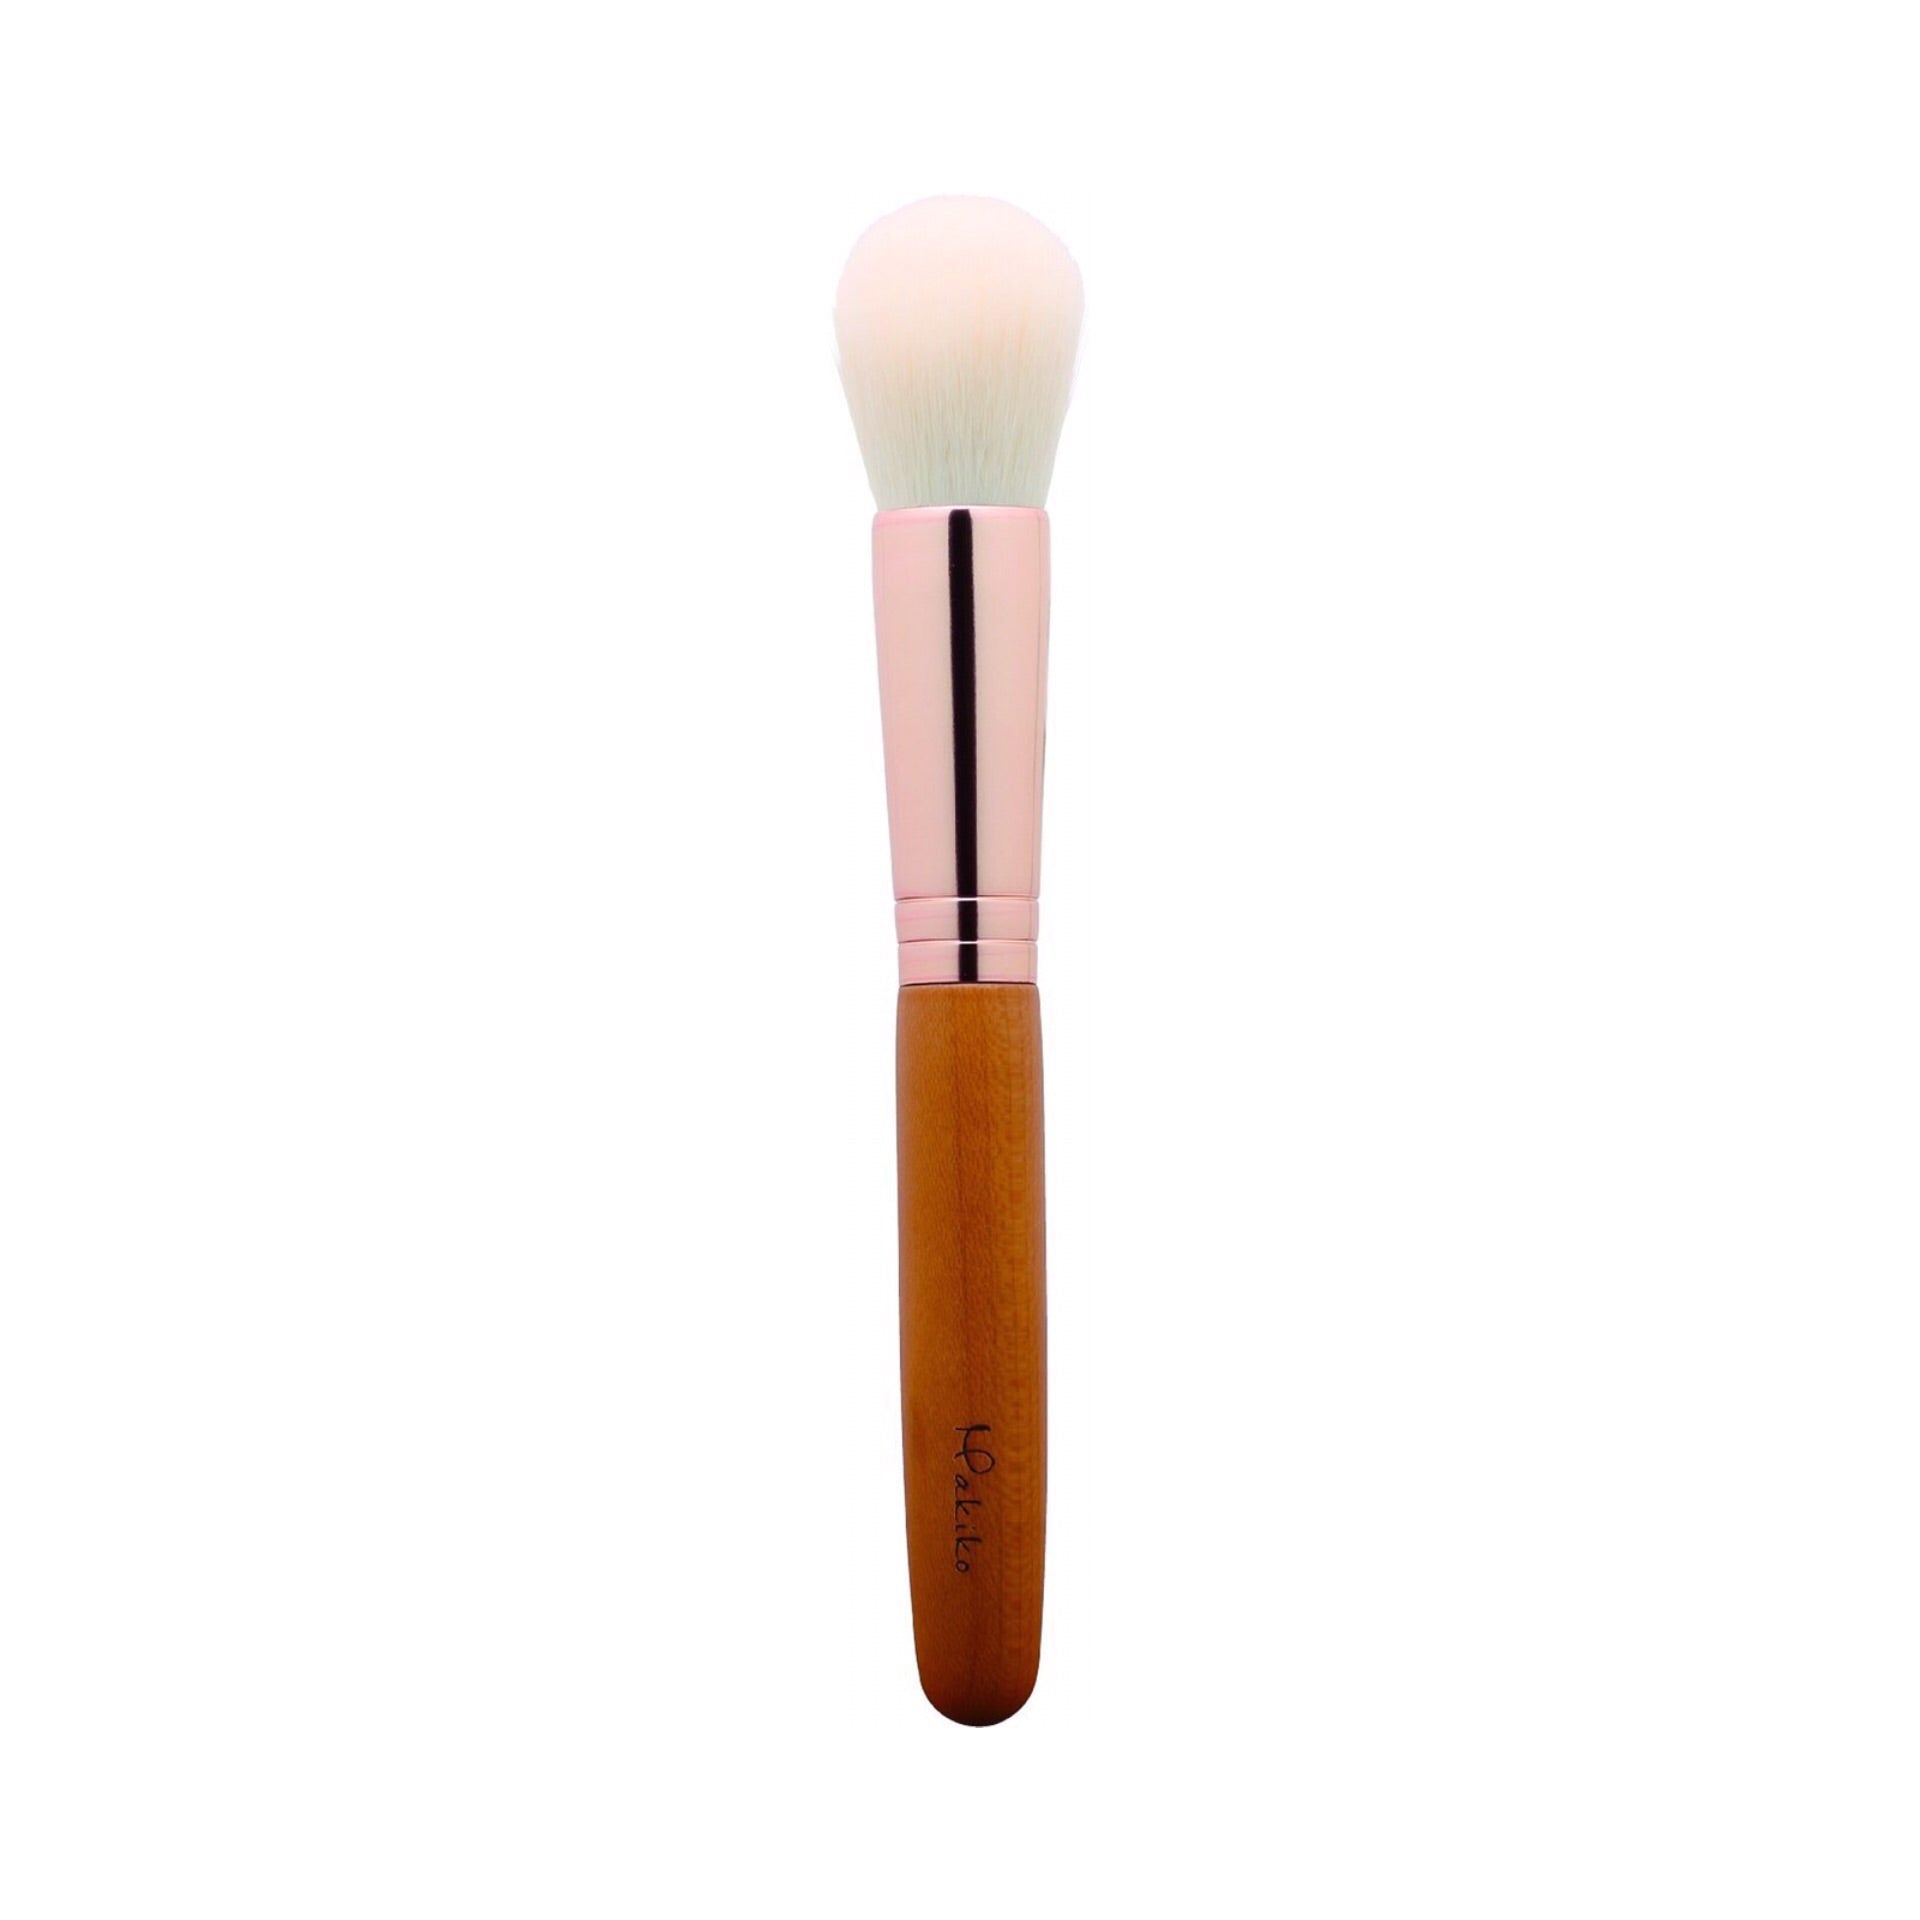 Koyudo M-2 Cheek Brush, Makiko Series - Fude Beauty, Japanese Makeup Brushes